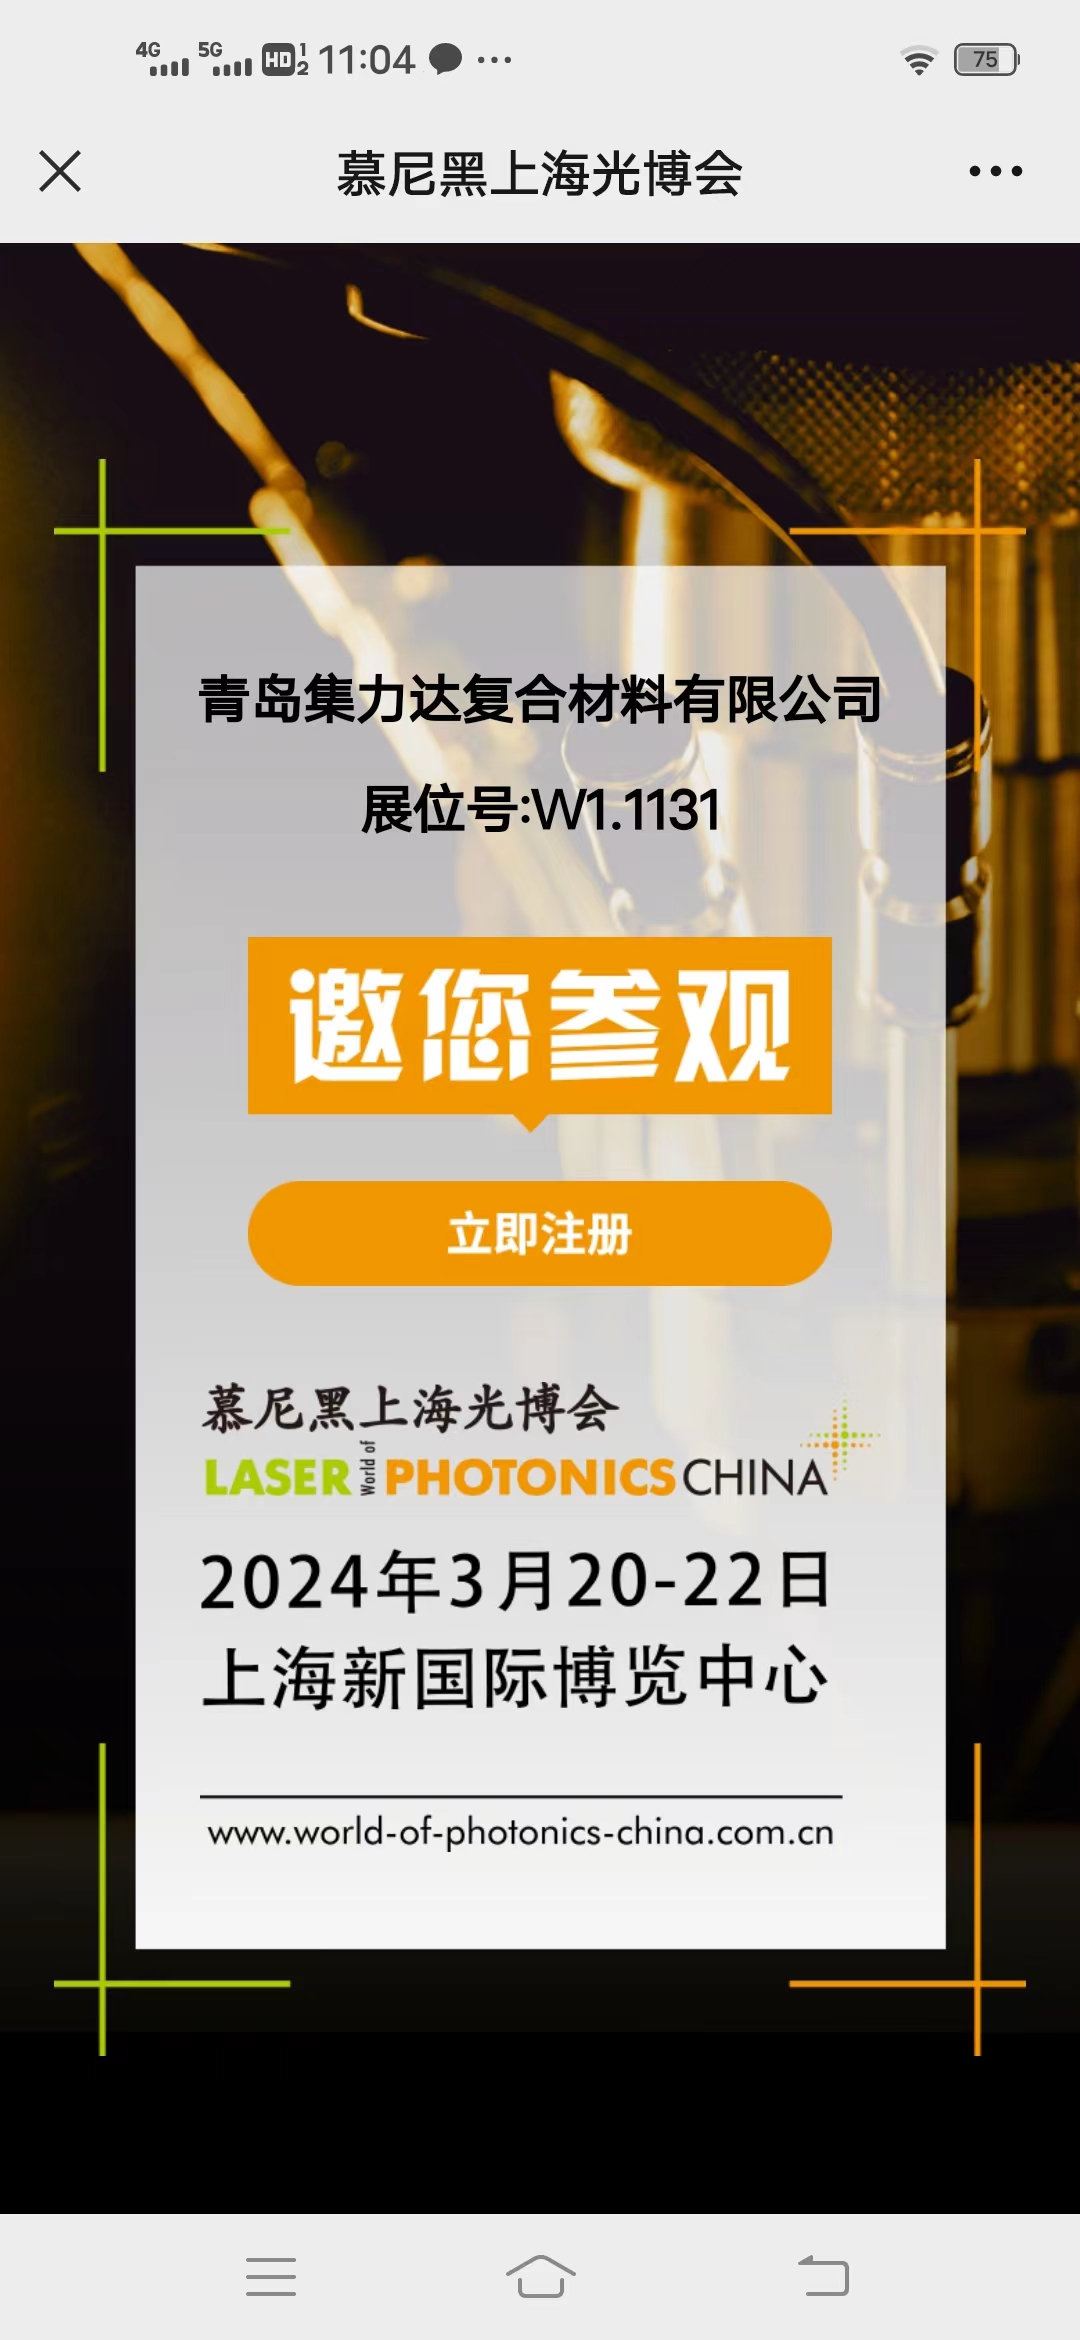 Rất vui được gặp gỡ tại Laser China 2024